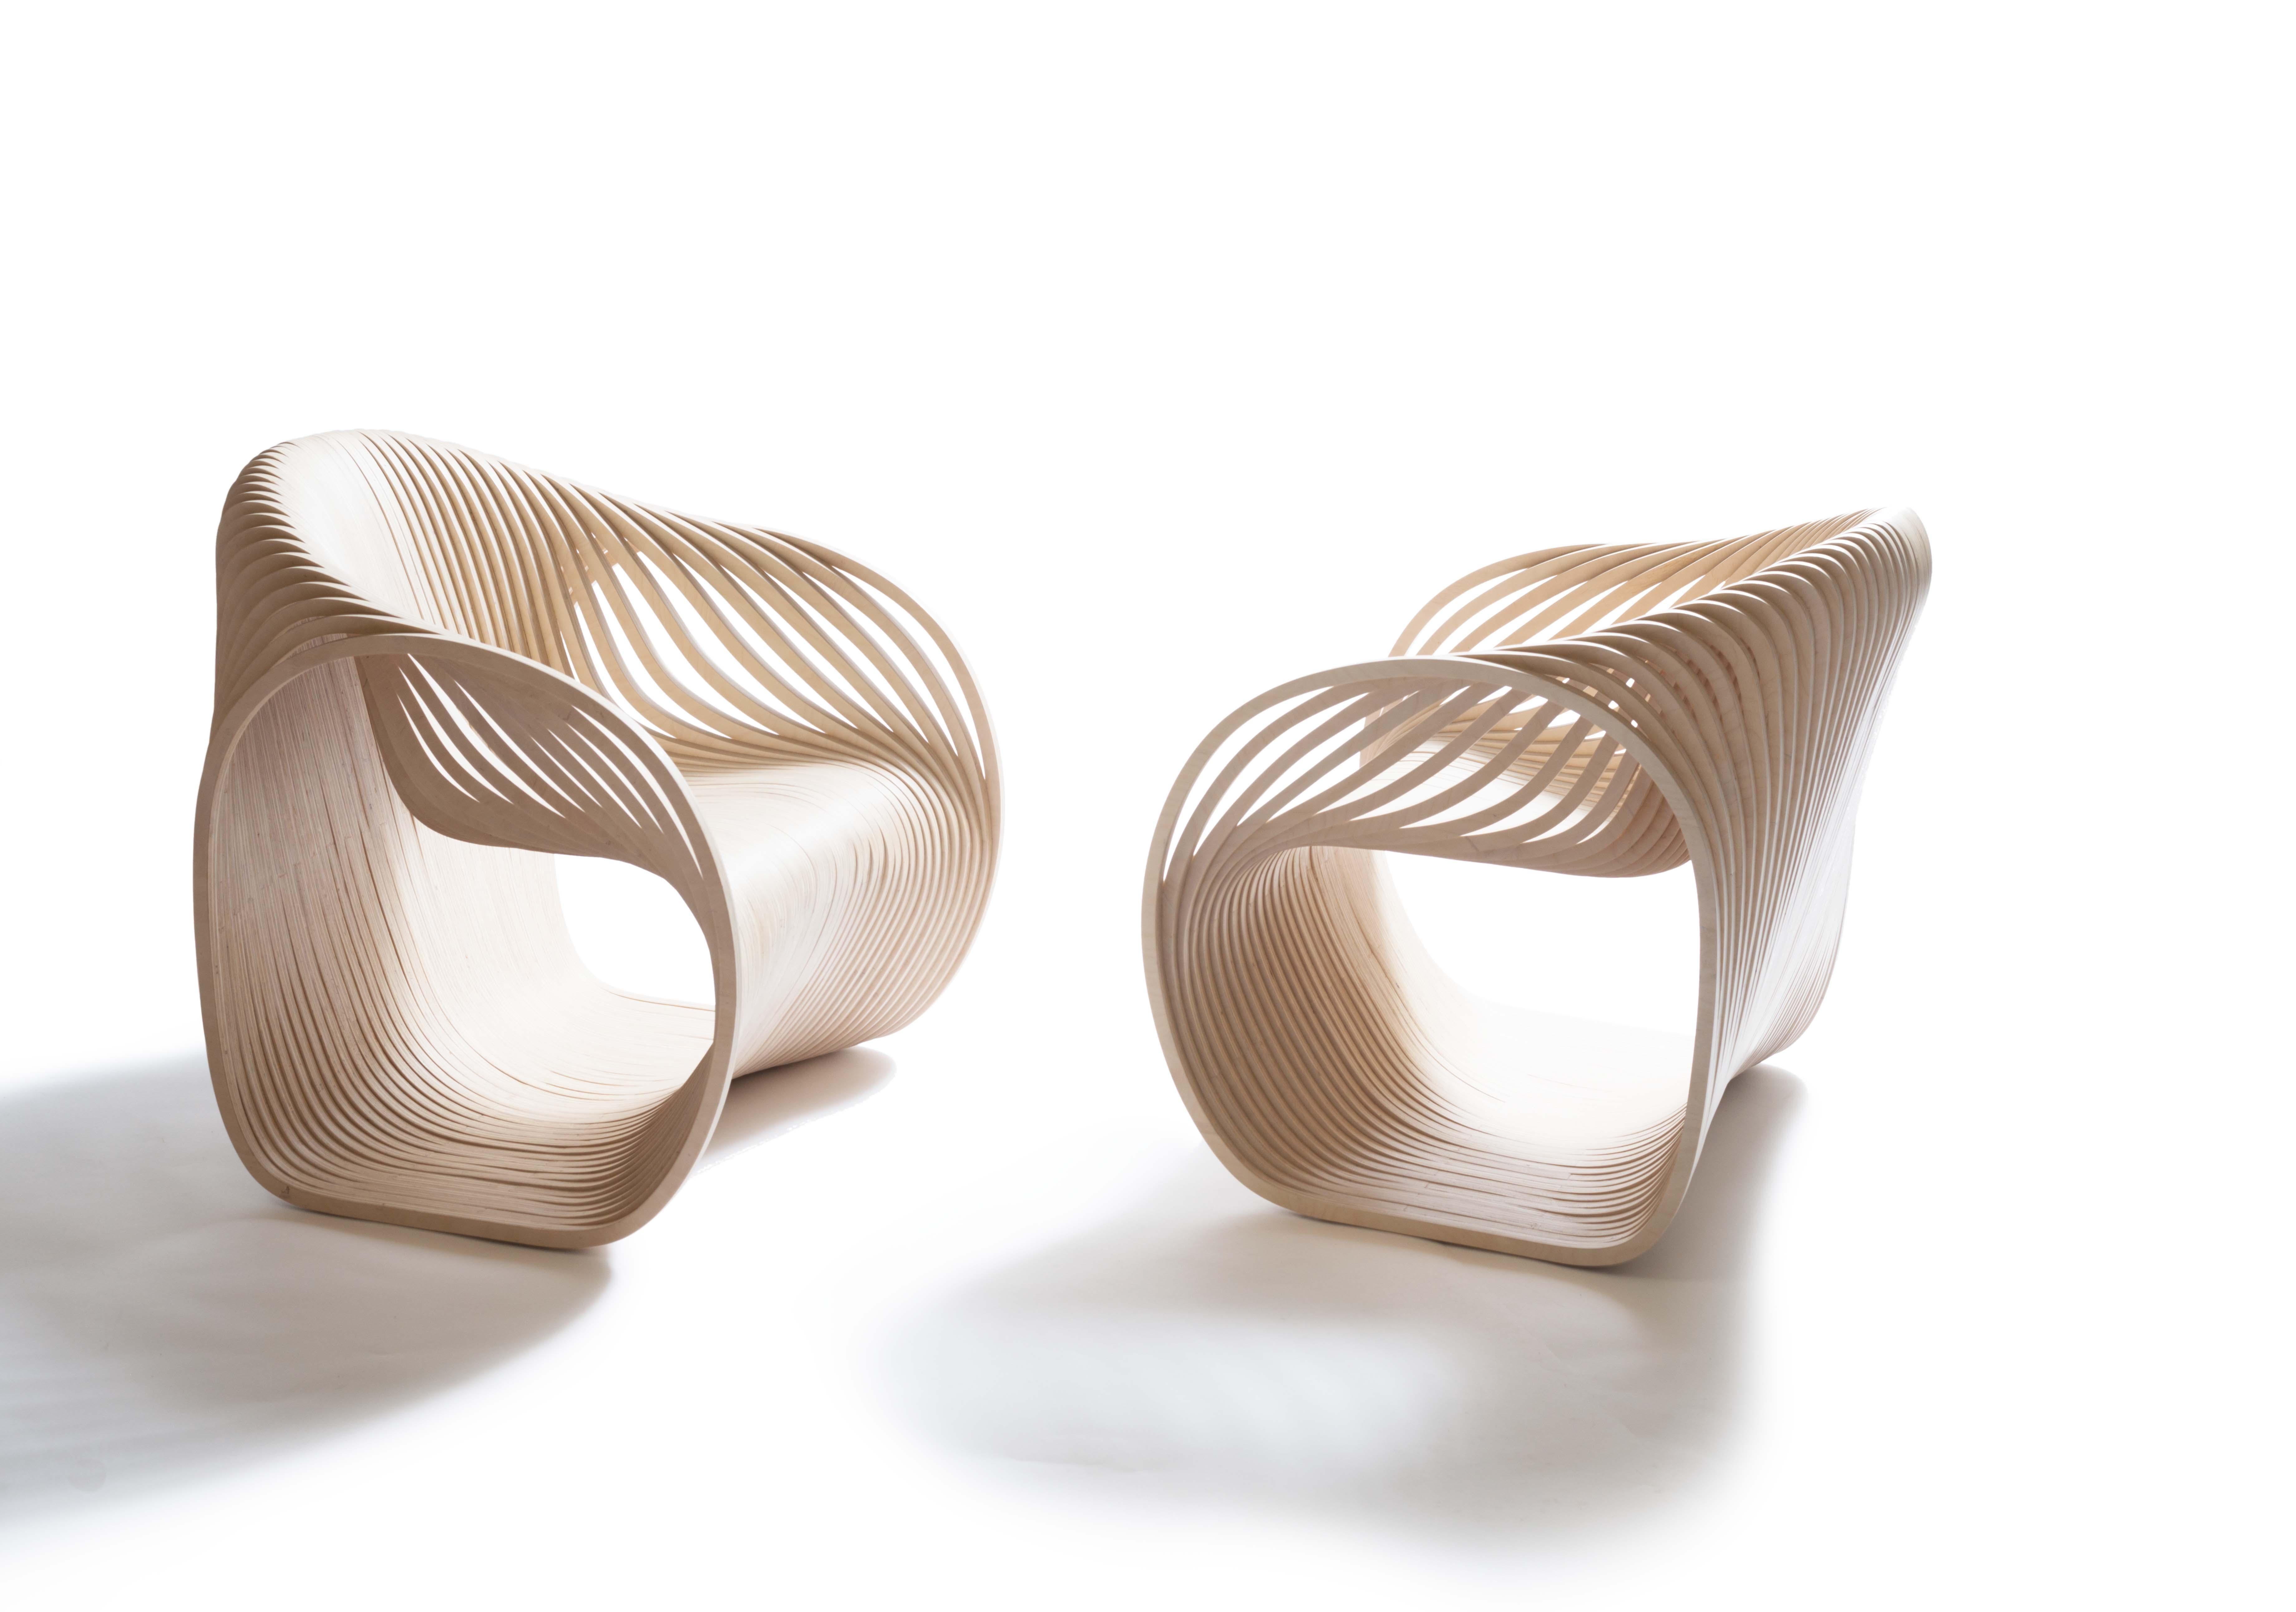 Piegatto a conçu la chaise Soave / #soavechair en 2018 et a été enregistrée en 2019. 
Cette chaise a été présentée dans un temple au Japon en 2019. 

Une chaise
avec des sentiments
faire un signe de la main
ou au revoir
l'acte de
waving exprimé
dans